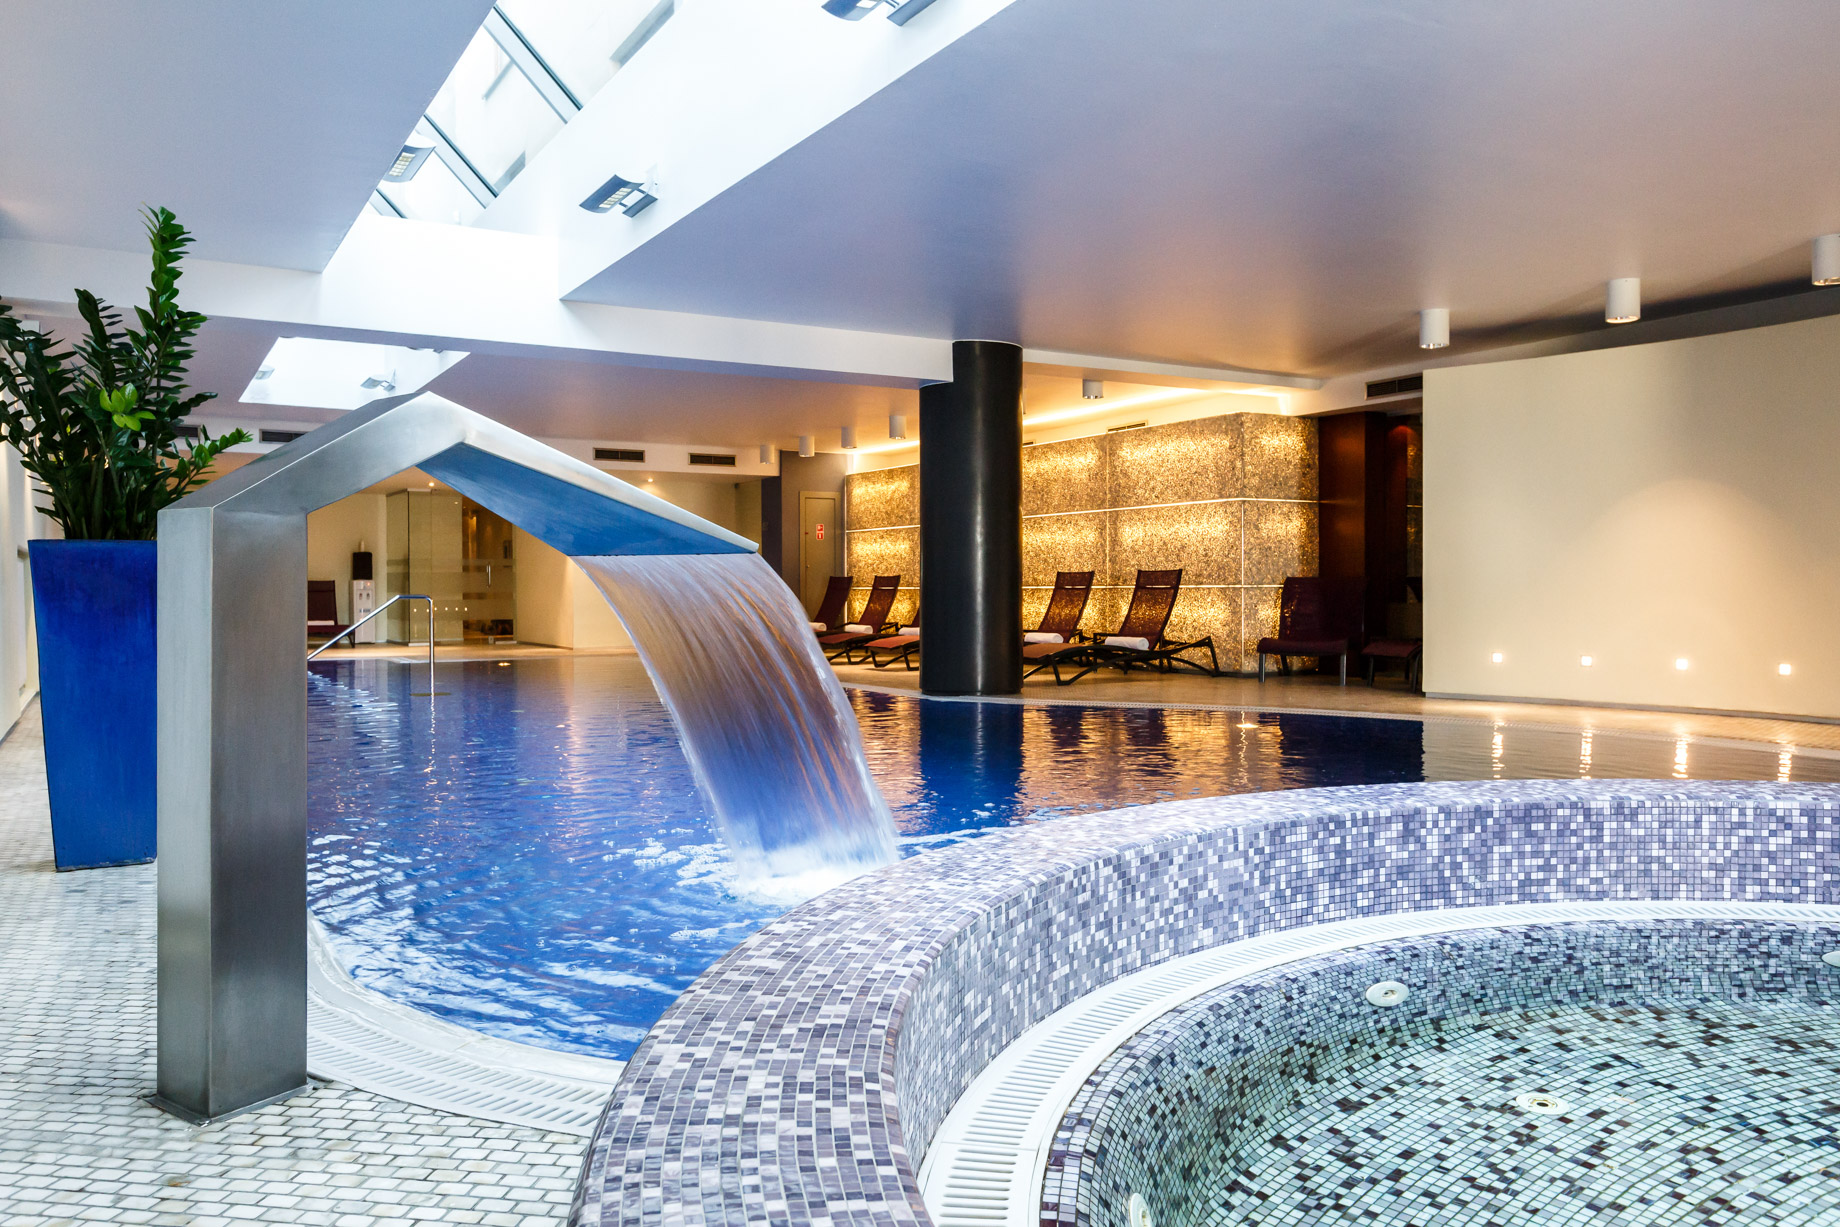 Ararat Park Hyatt Moscow Hotel – Moscow, Russia – Spa & Health Club Pool